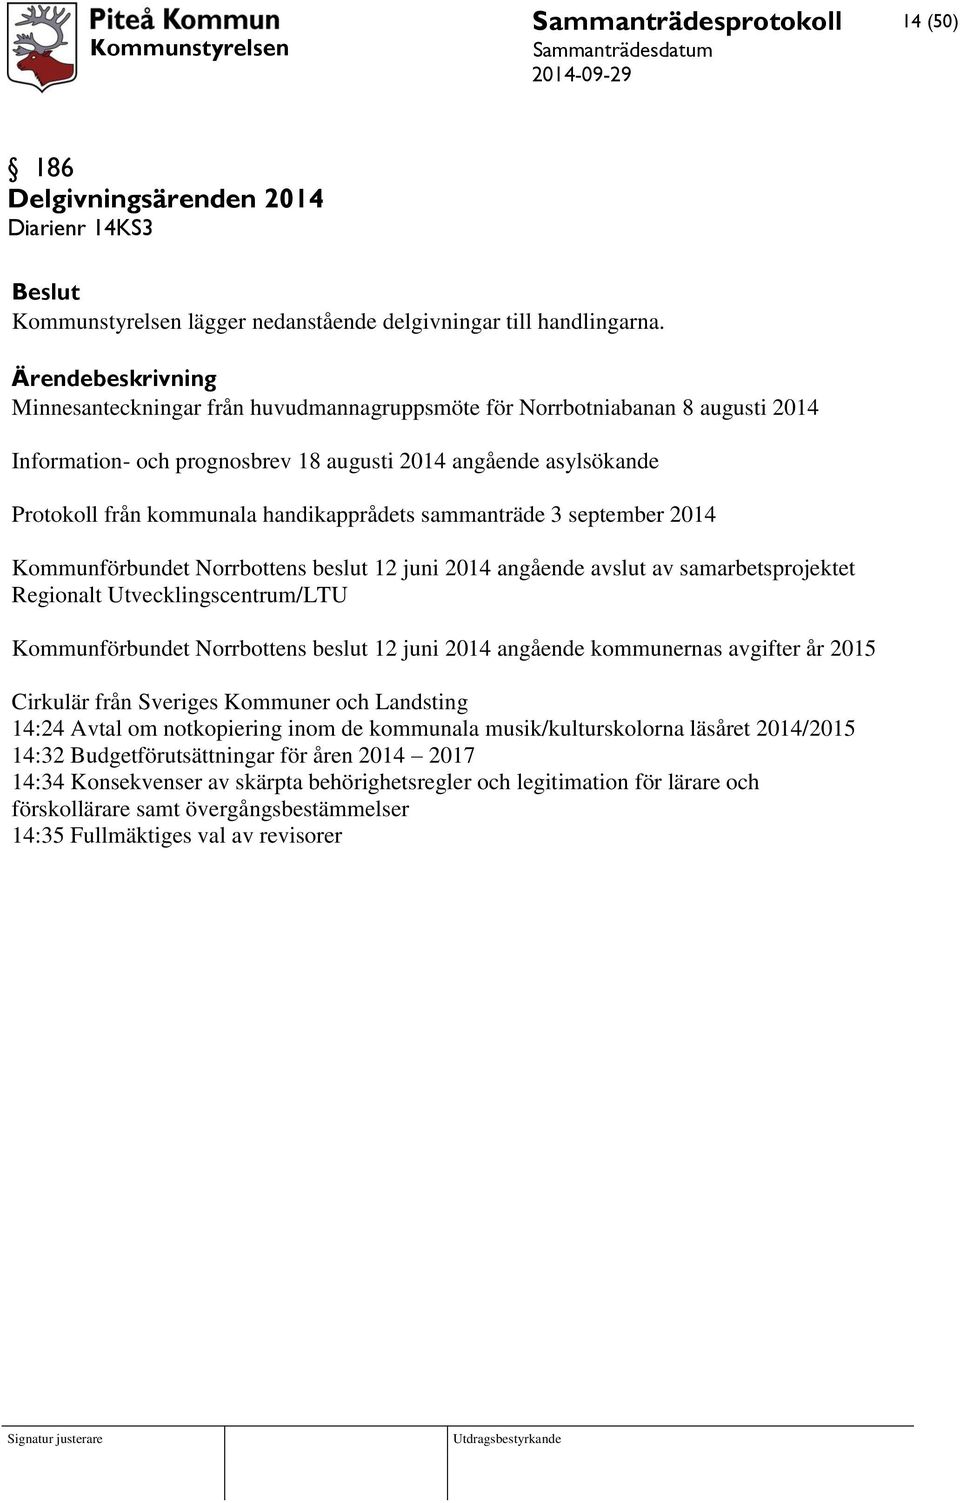 3 september 2014 Kommunförbundet Norrbottens beslut 12 juni 2014 angående avslut av samarbetsprojektet Regionalt Utvecklingscentrum/LTU Kommunförbundet Norrbottens beslut 12 juni 2014 angående